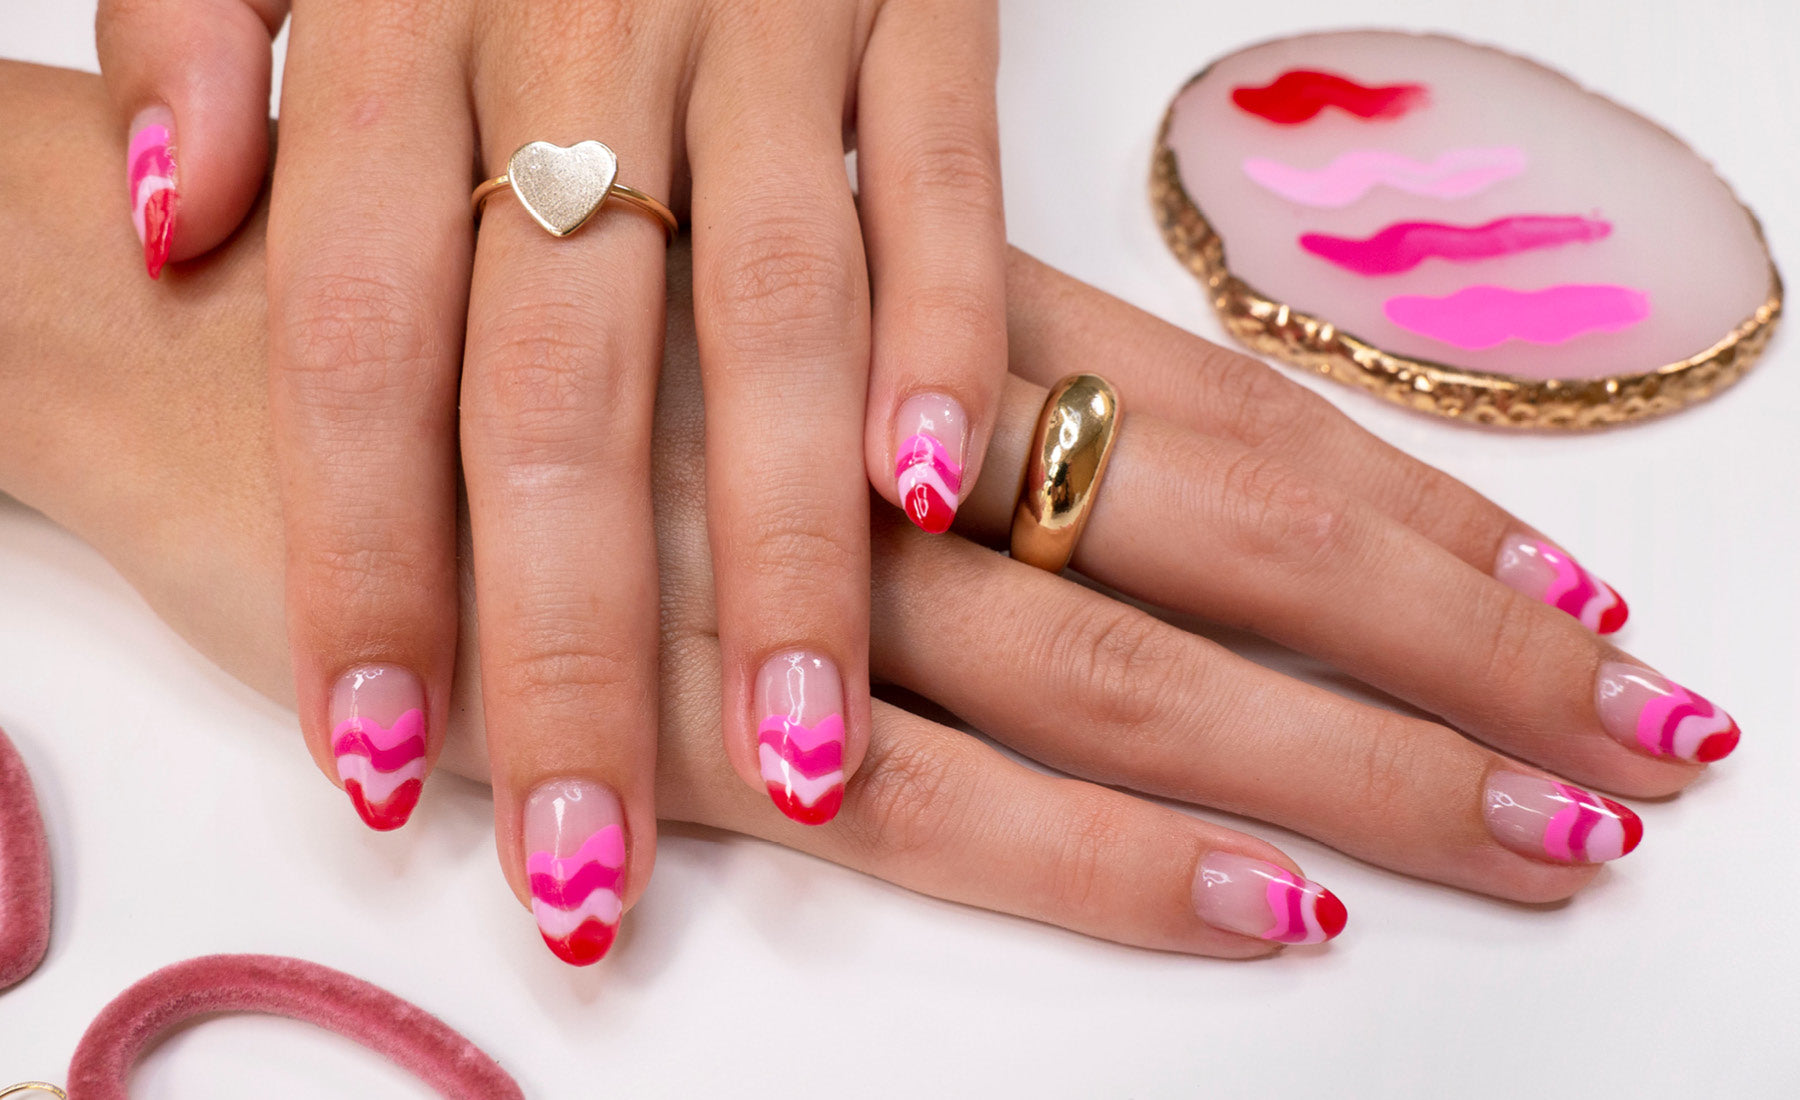 Pink Wavy Tips Gel Nail Polish Art